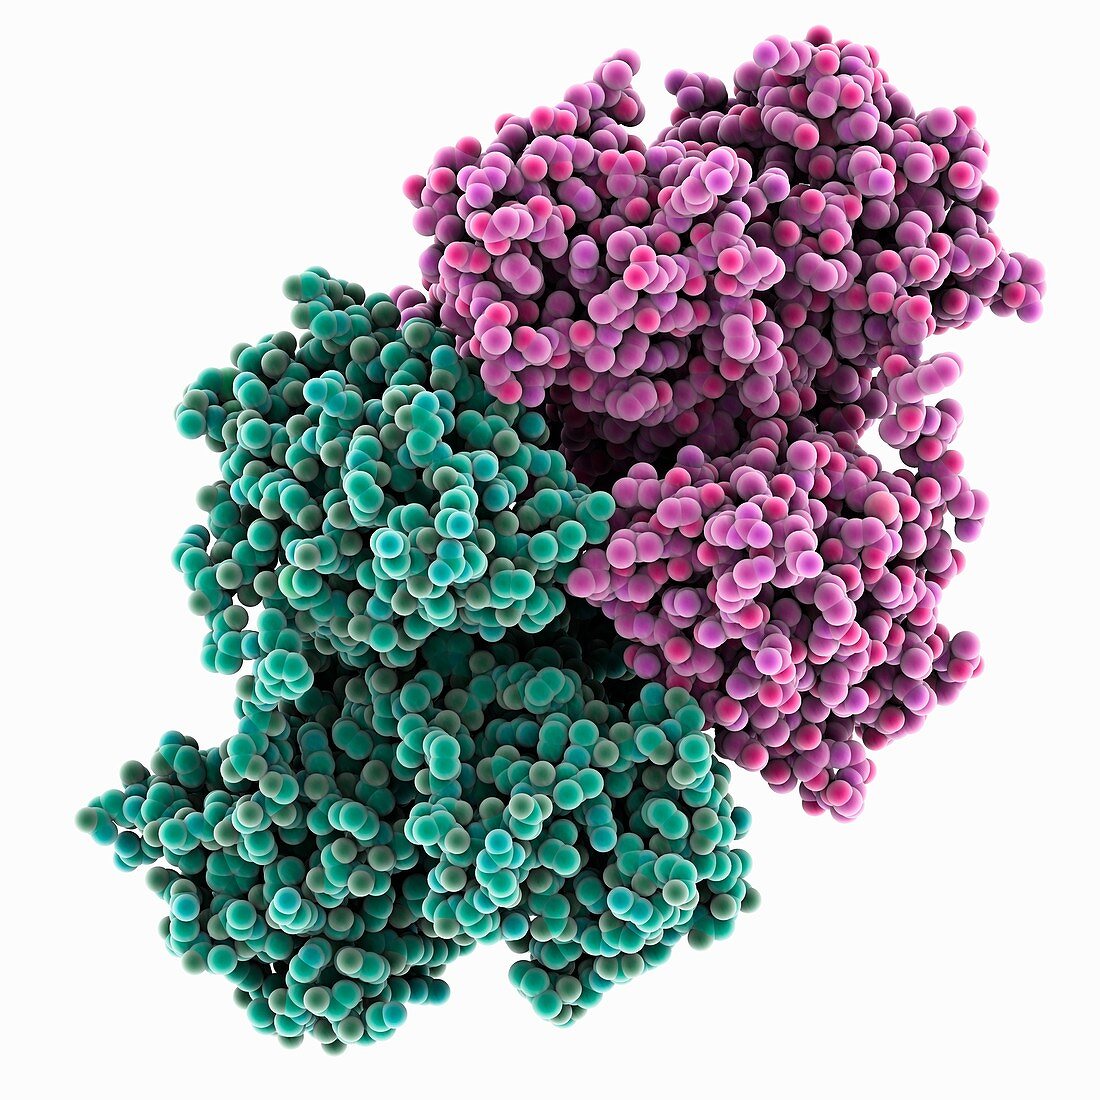 Hepatitis C virus enzyme complex, molecular model